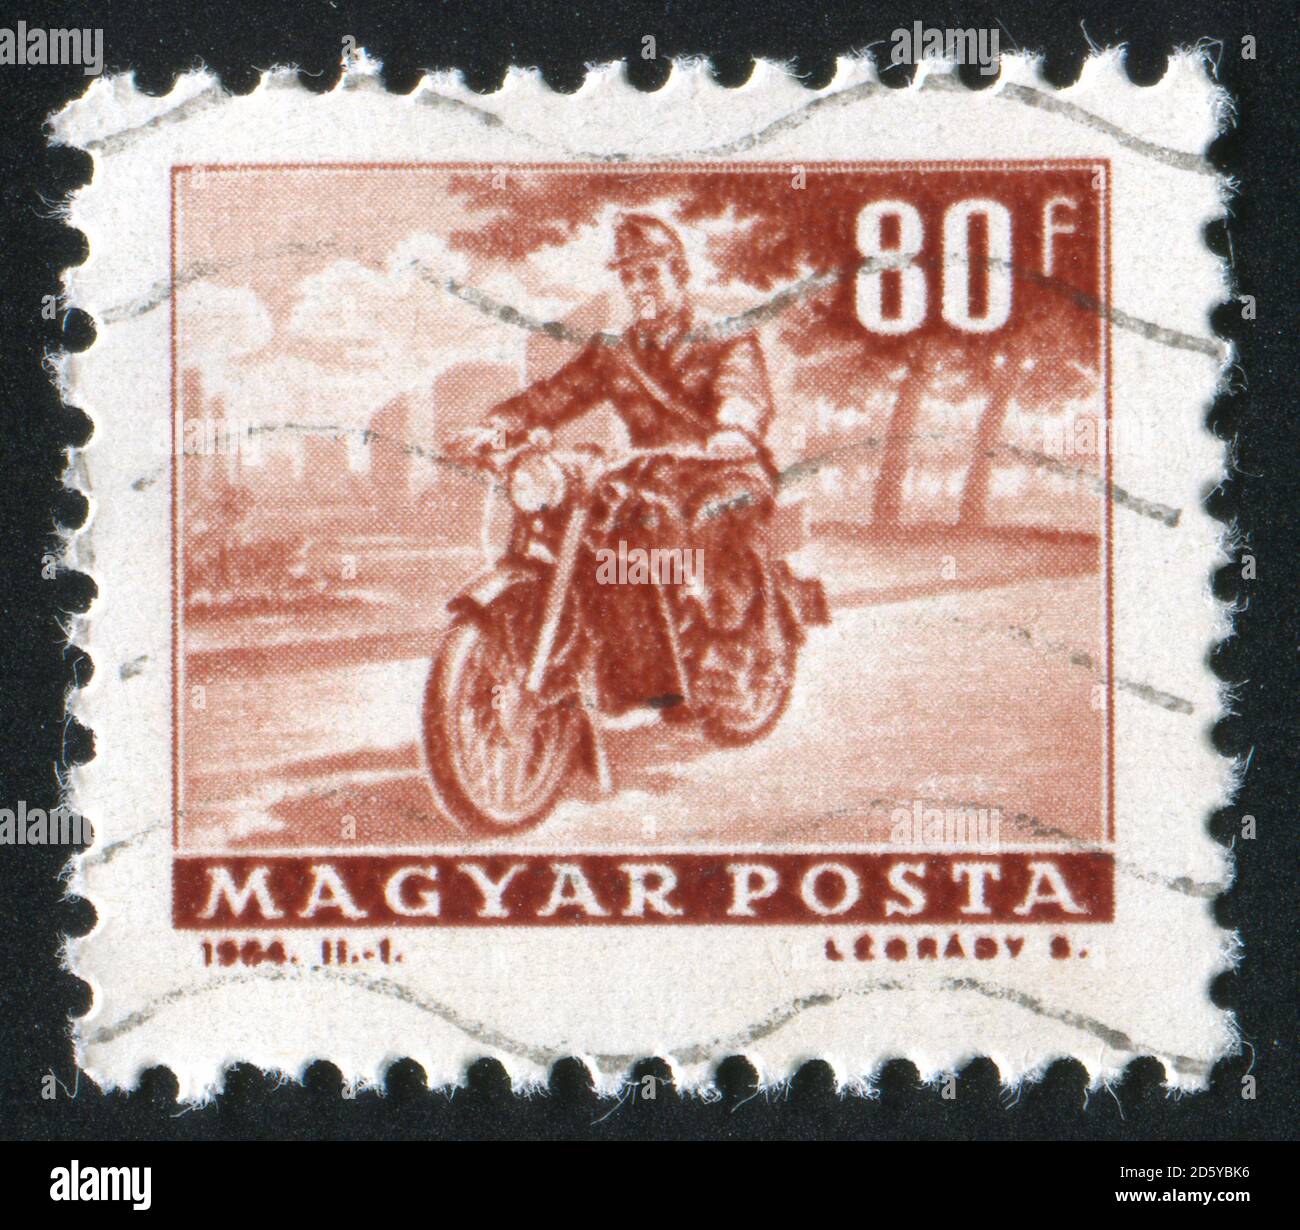 UNGARN - UM 1964: Briefmarke gedruckt von Ungarn, zeigt Motorradreise, um 1964 Stockfoto